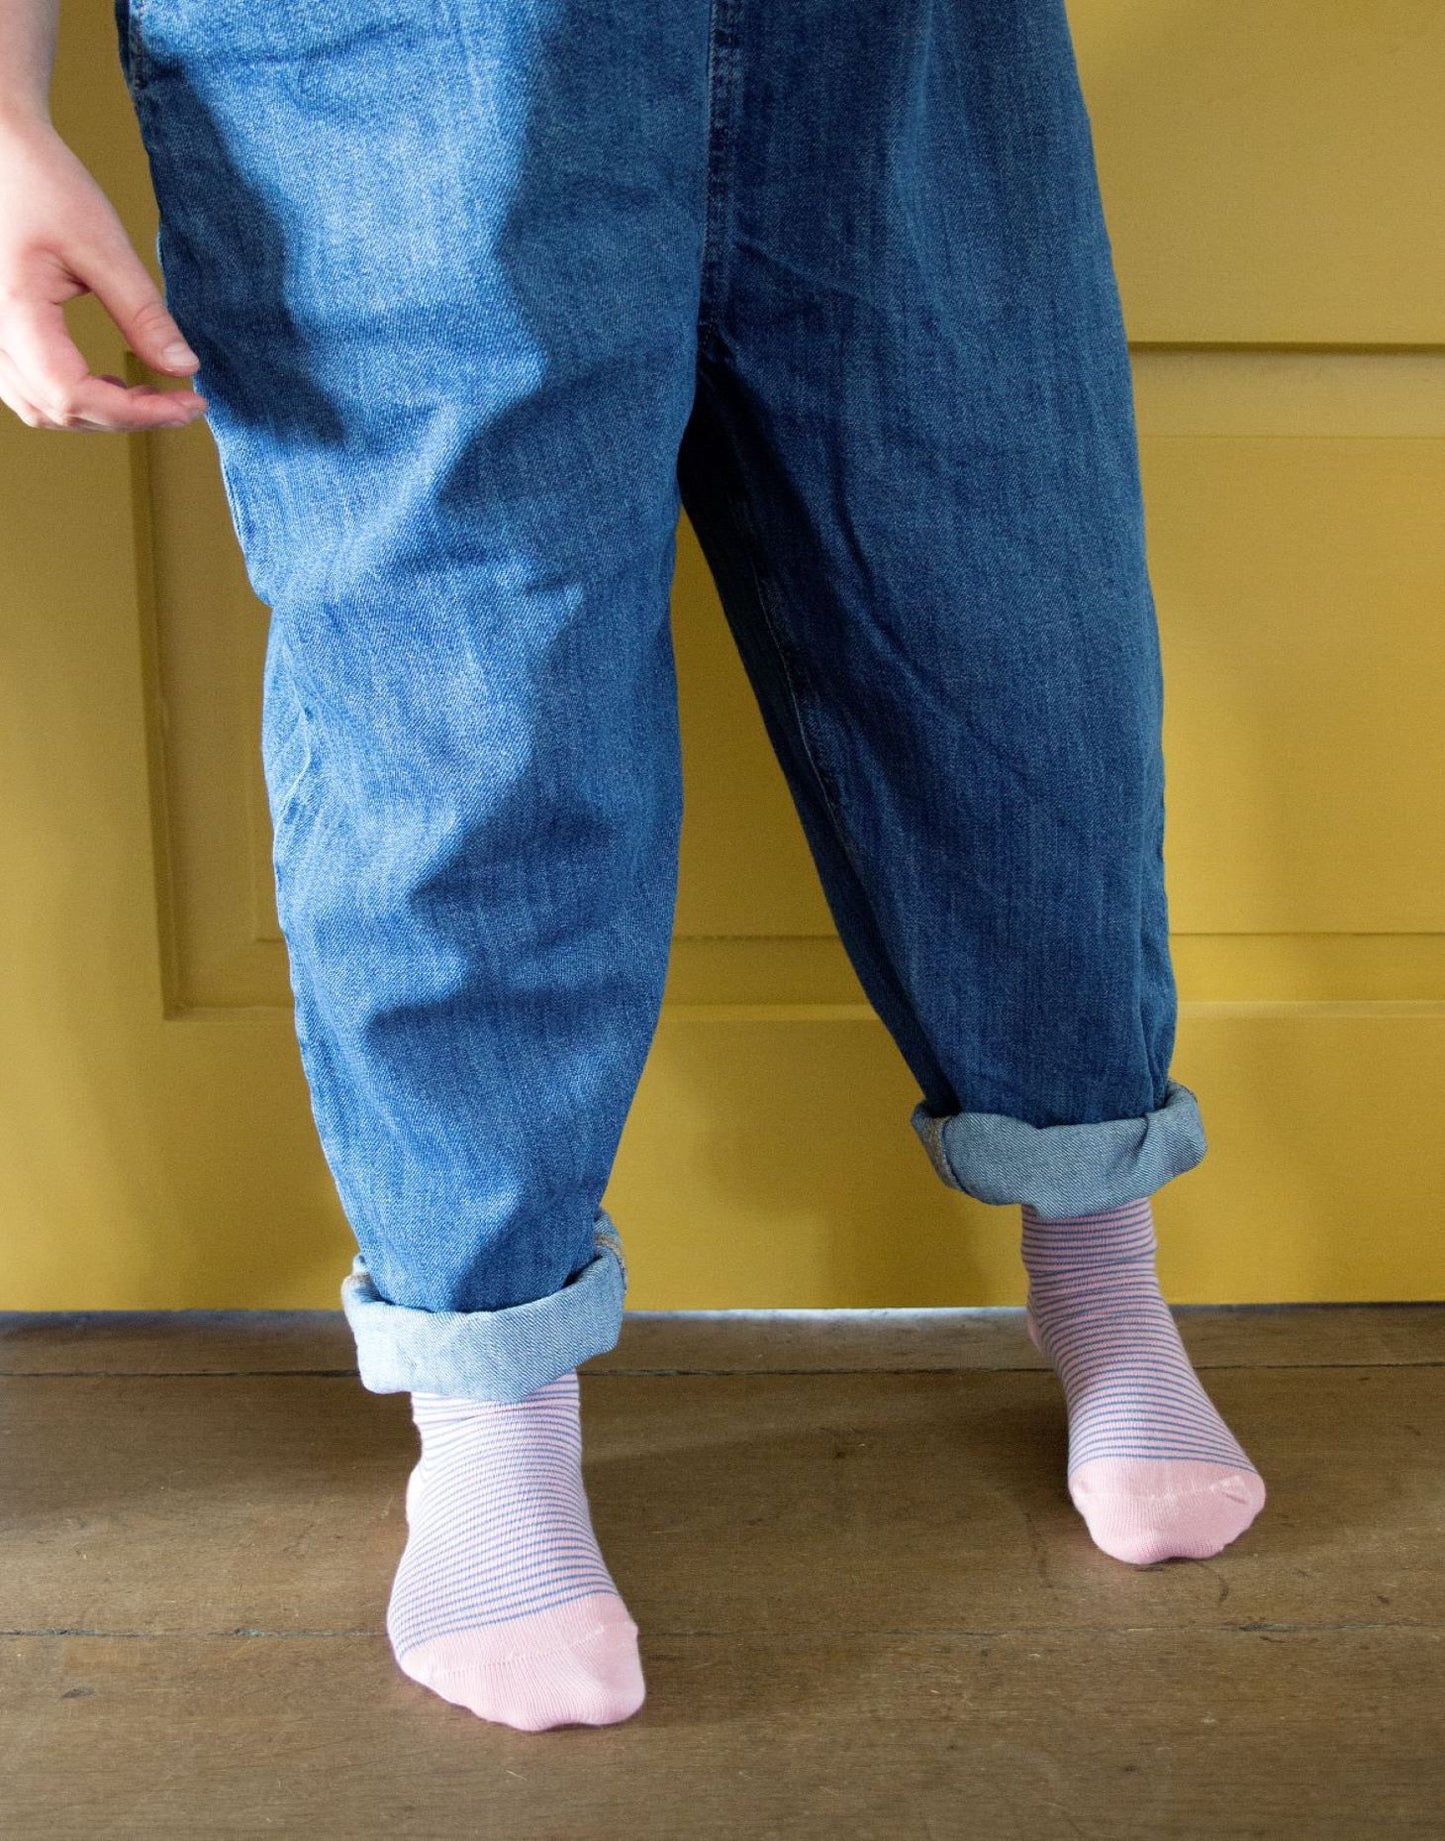 7pk Kids Cotton Stripe Ankle Socks